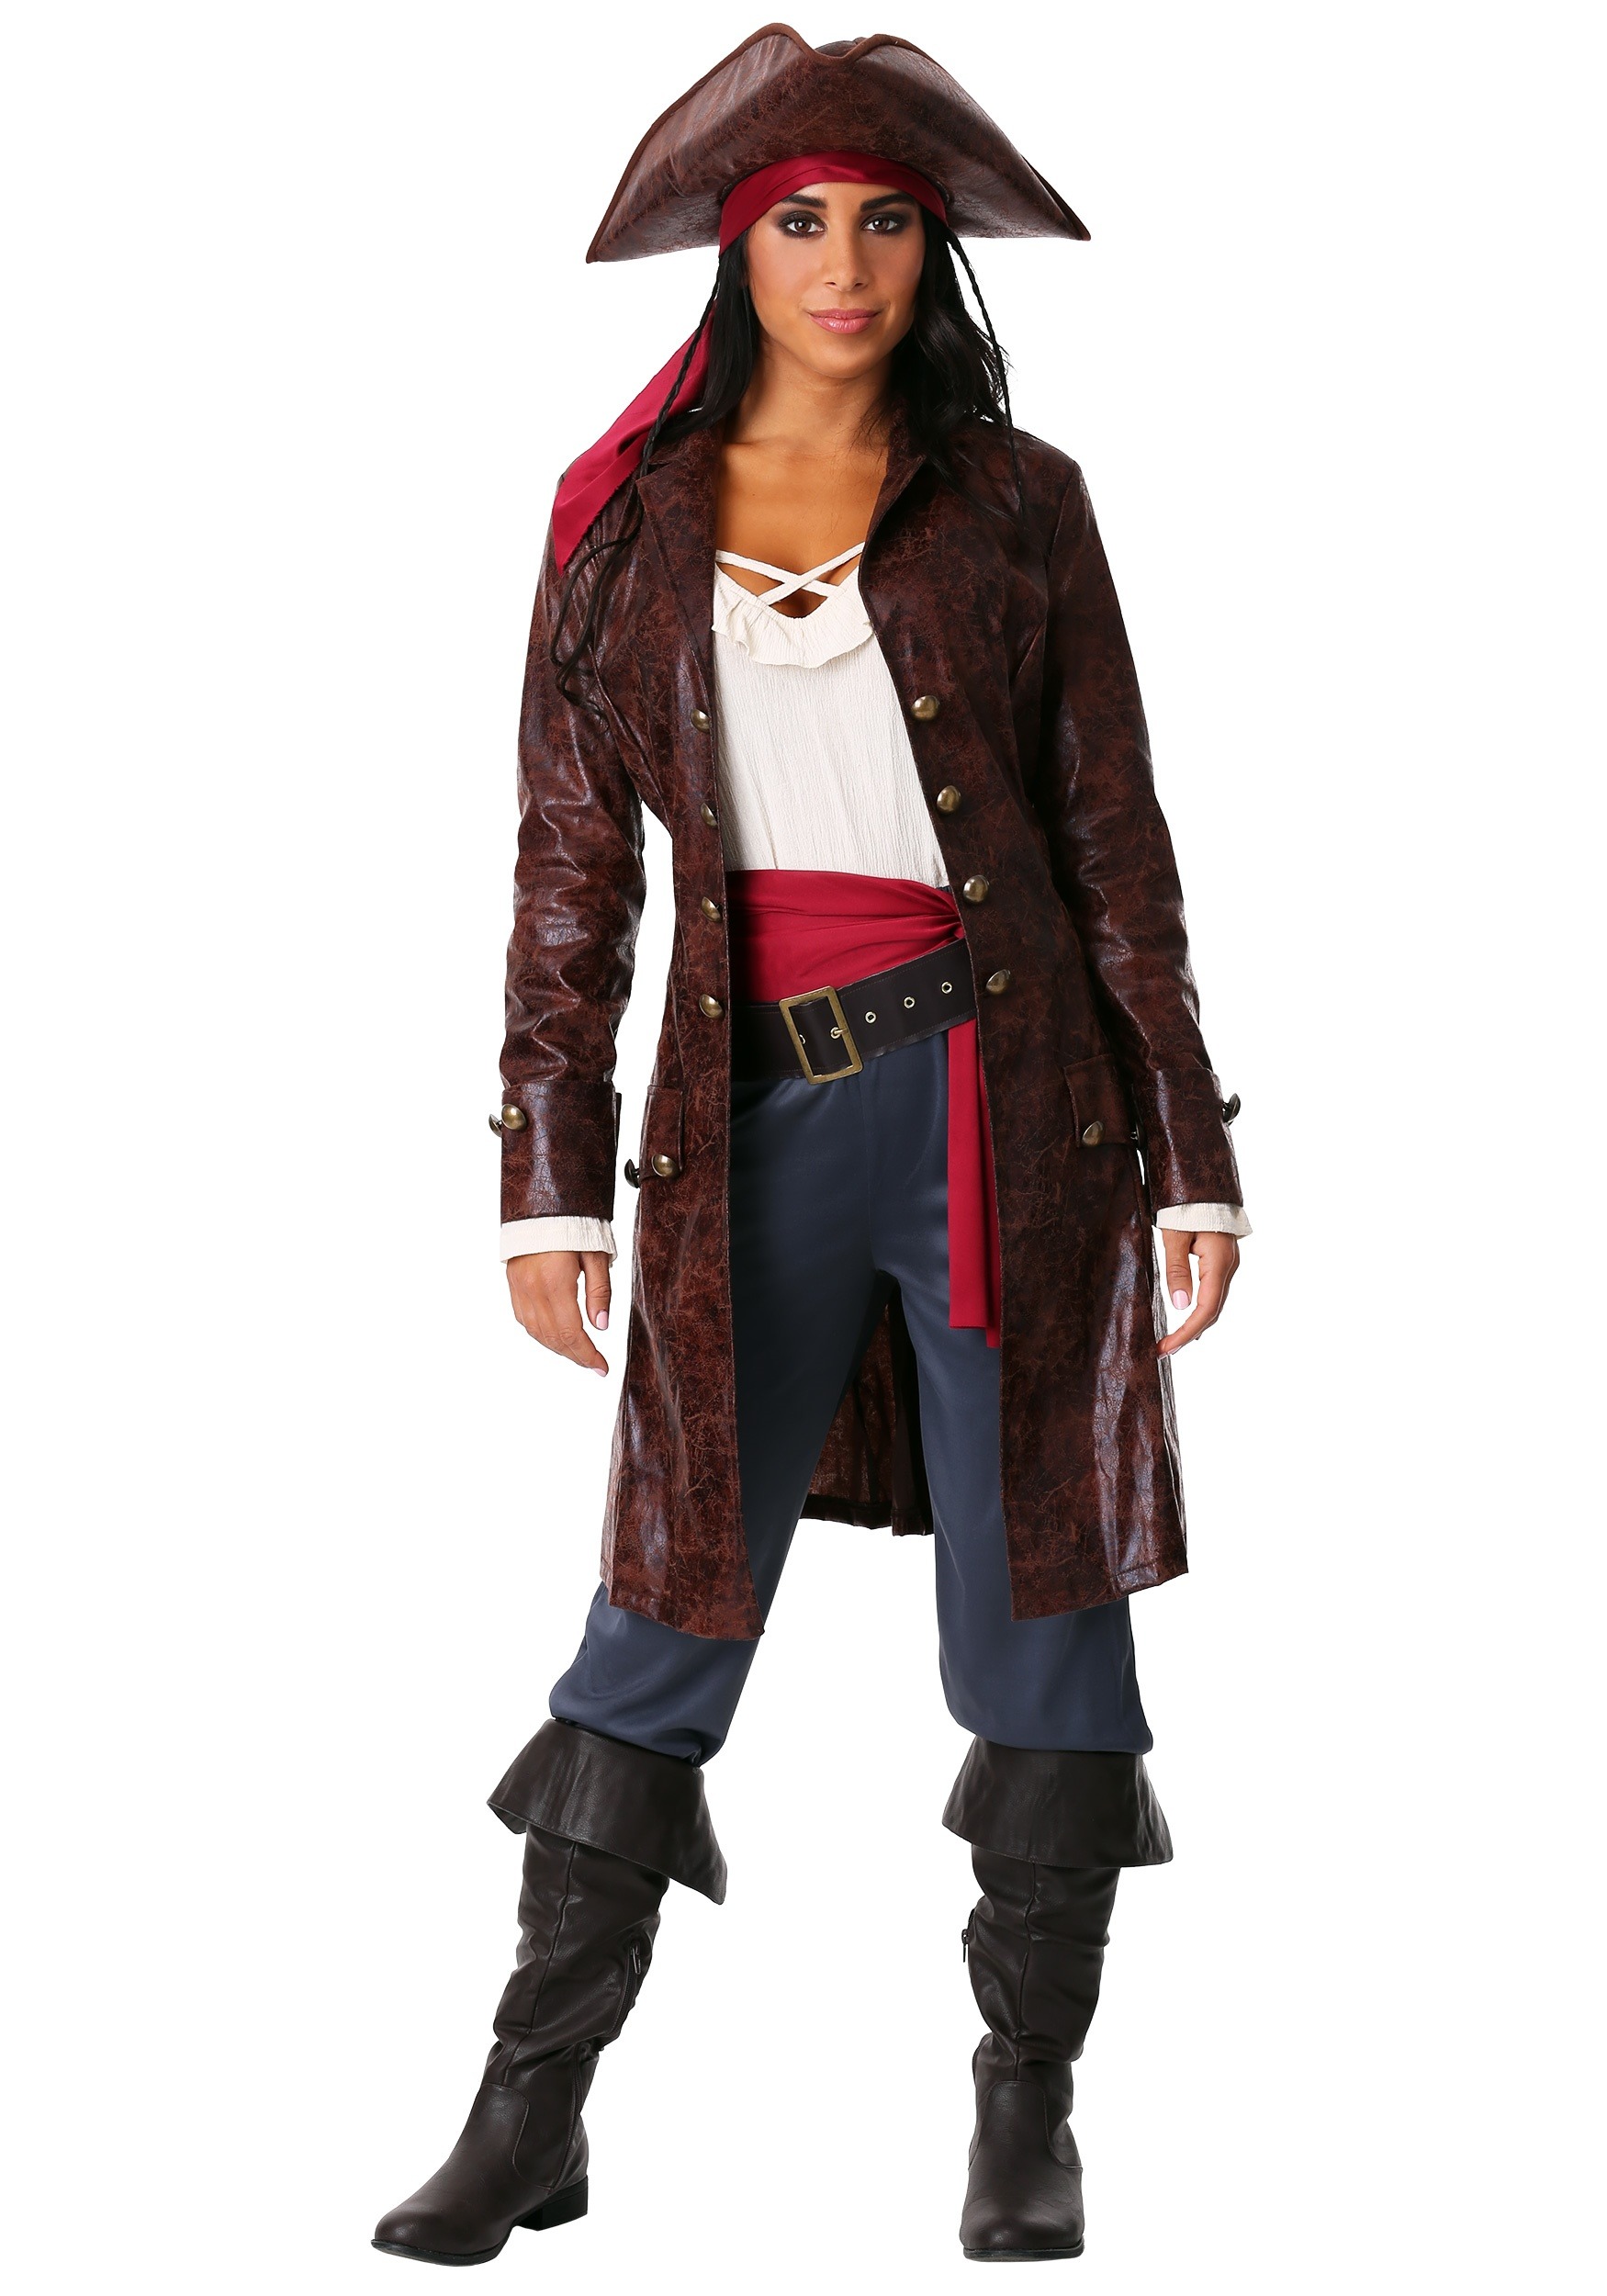 Plus Size Pretty Pirate Captain Costume For Women